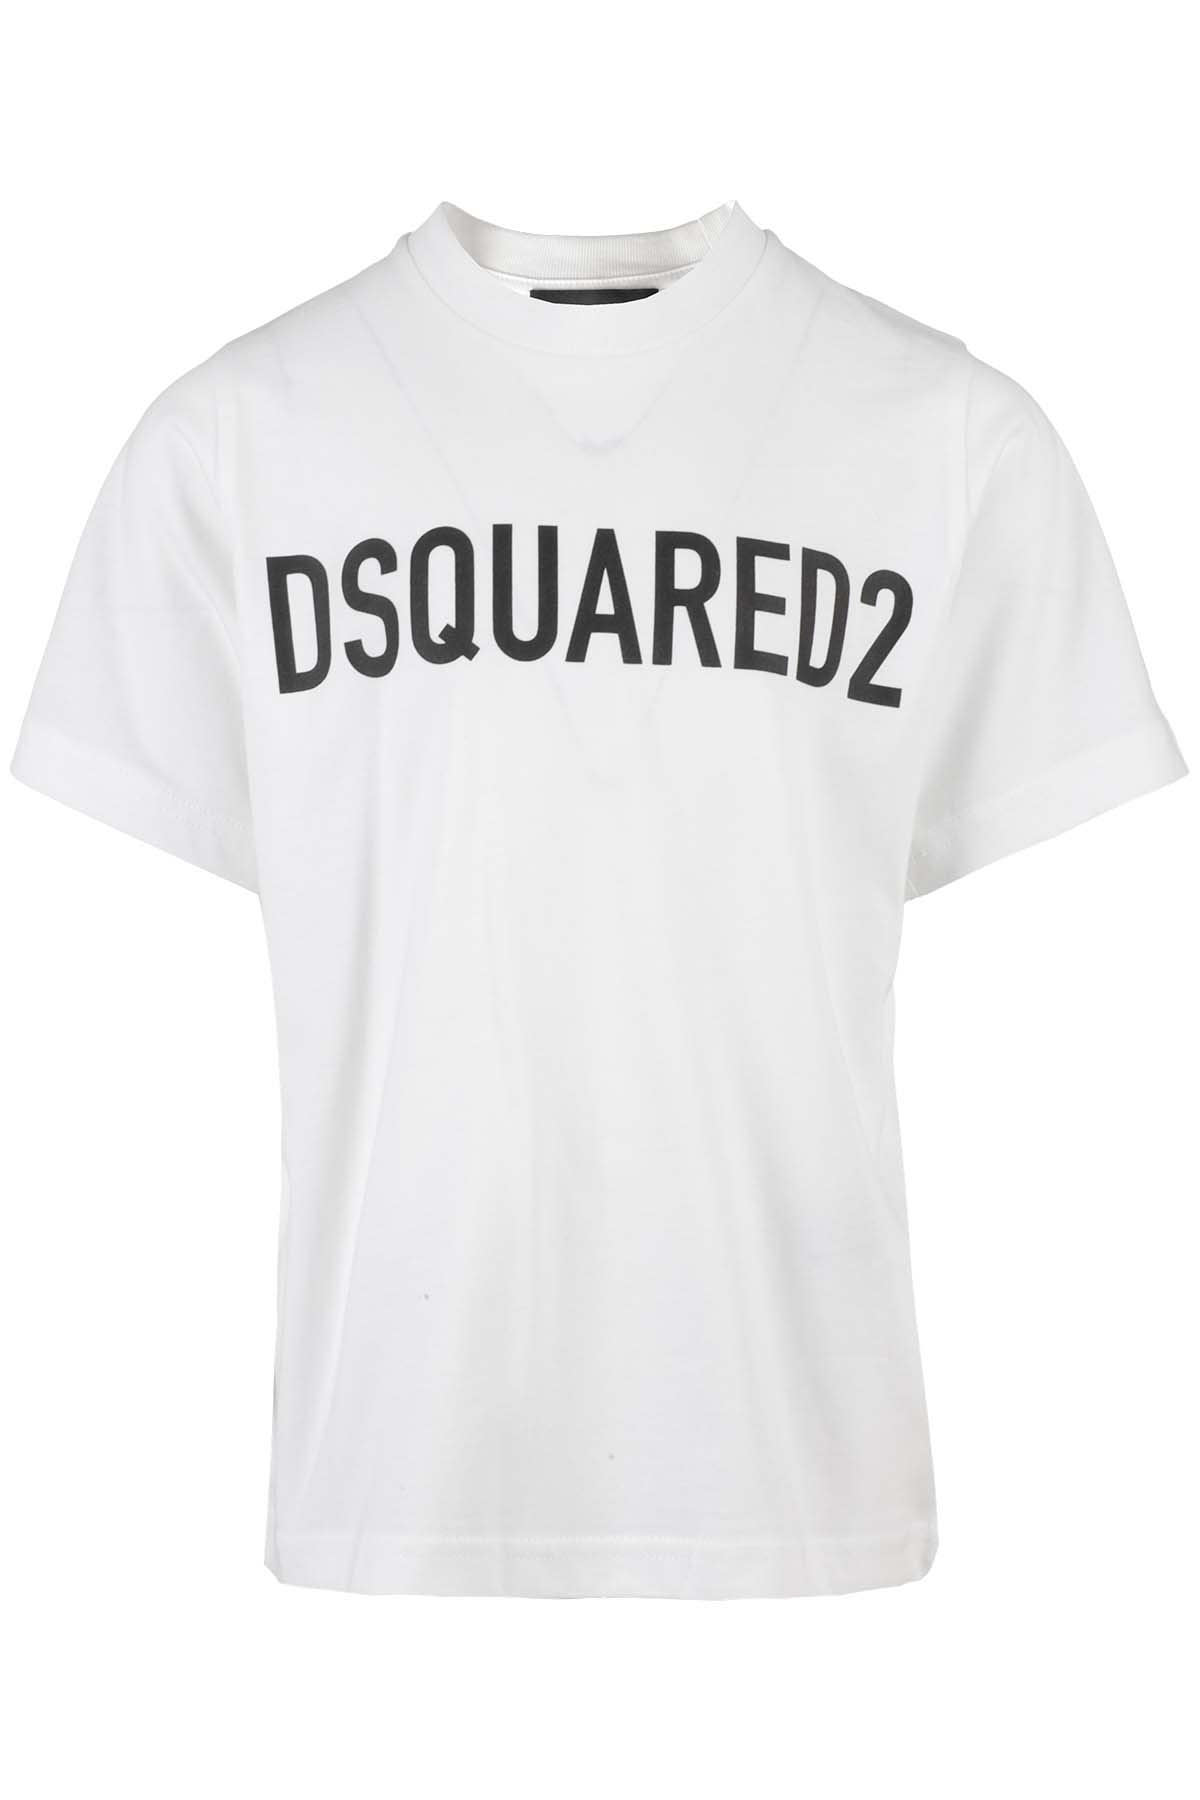 Dsquared2 Kids' Maglietta In Bianco